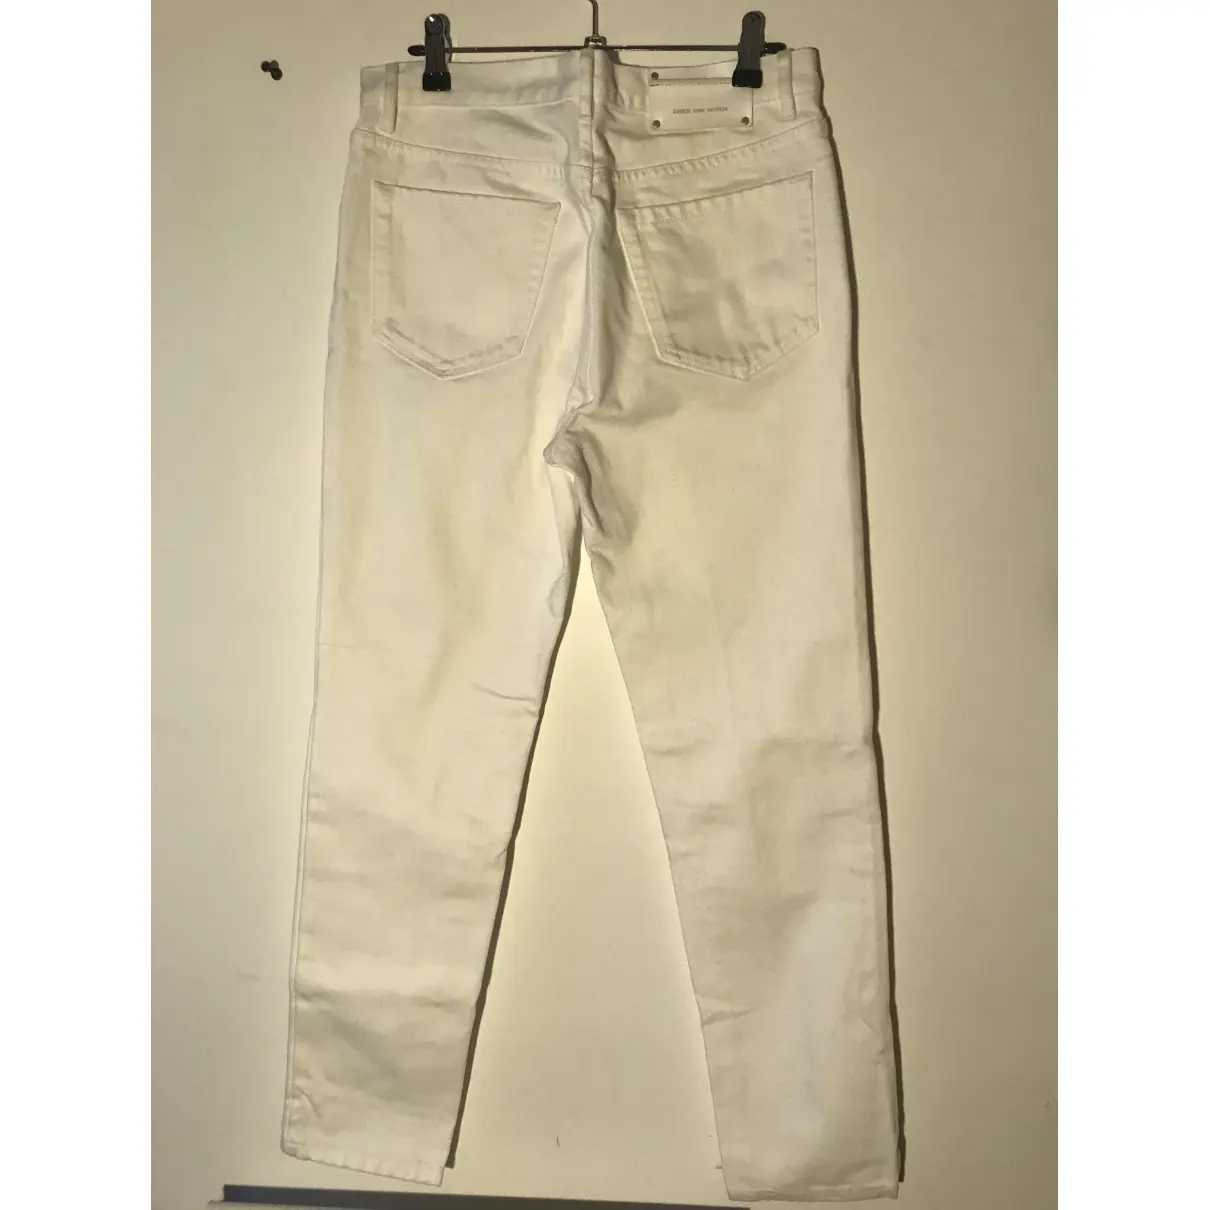 Buy Dries Van Noten Slim jeans online